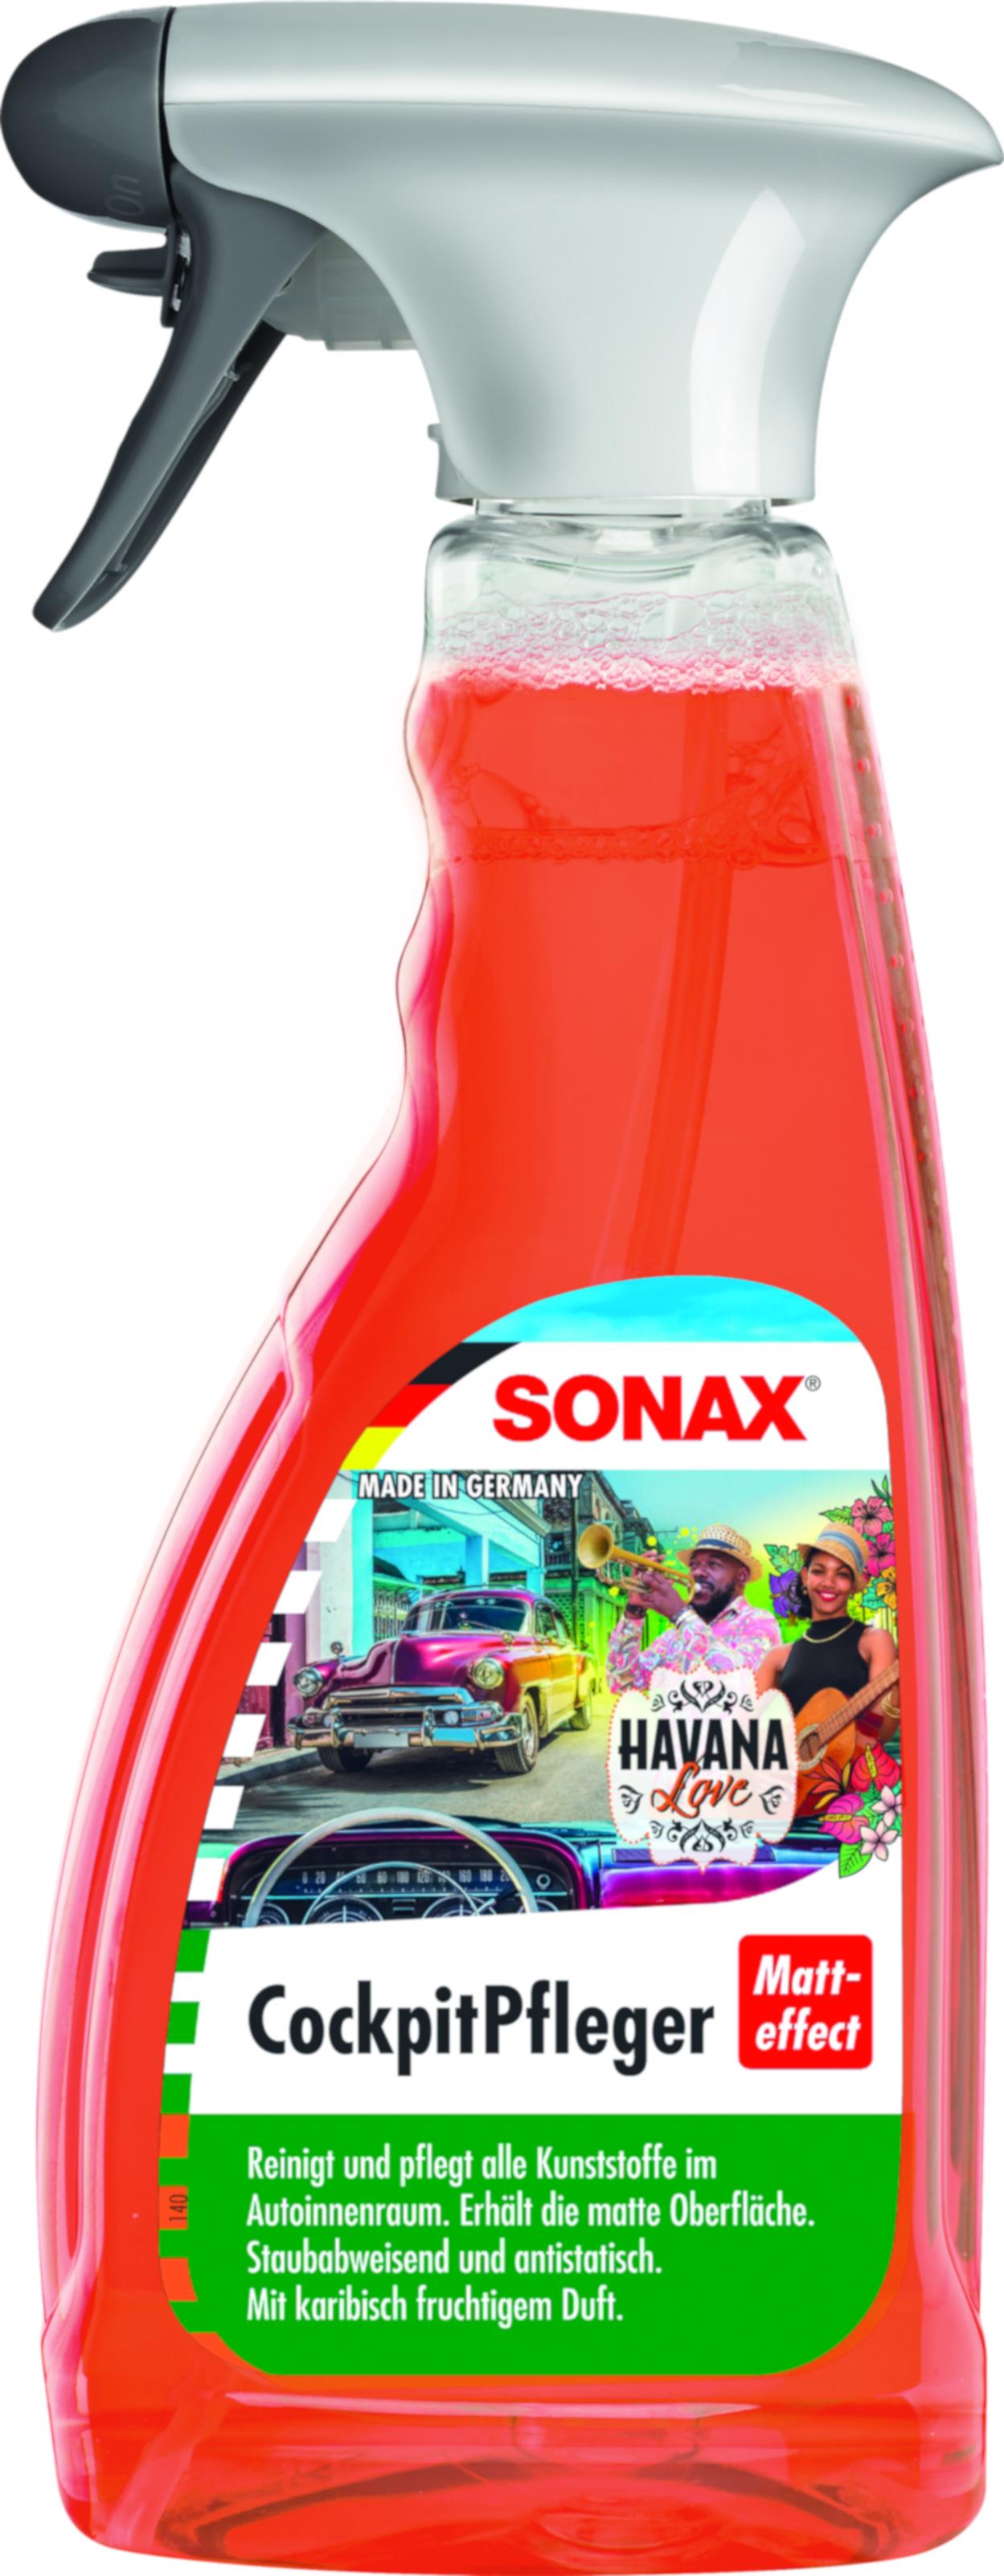 SONAX CockpitPfleger Matteffect Ocean-Fresh 500 ml Flasche